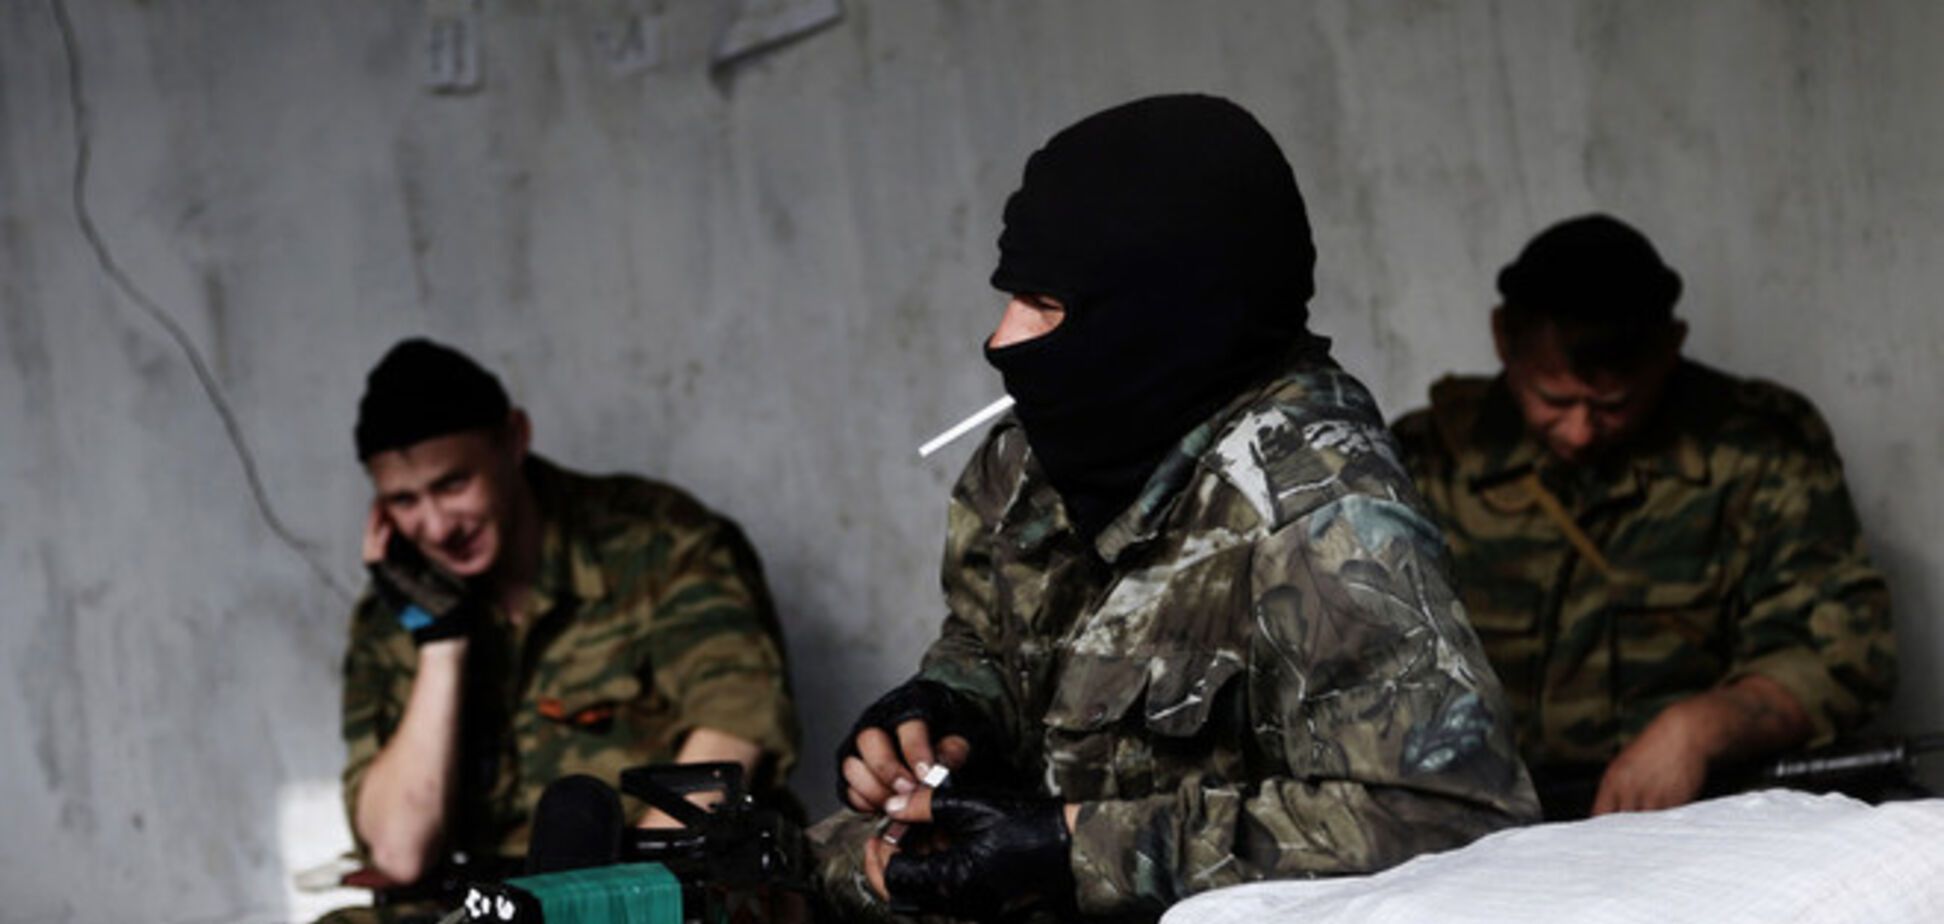 Европейские СМИ сообщают о переходе конфликта на Донбассе в опасную фазу